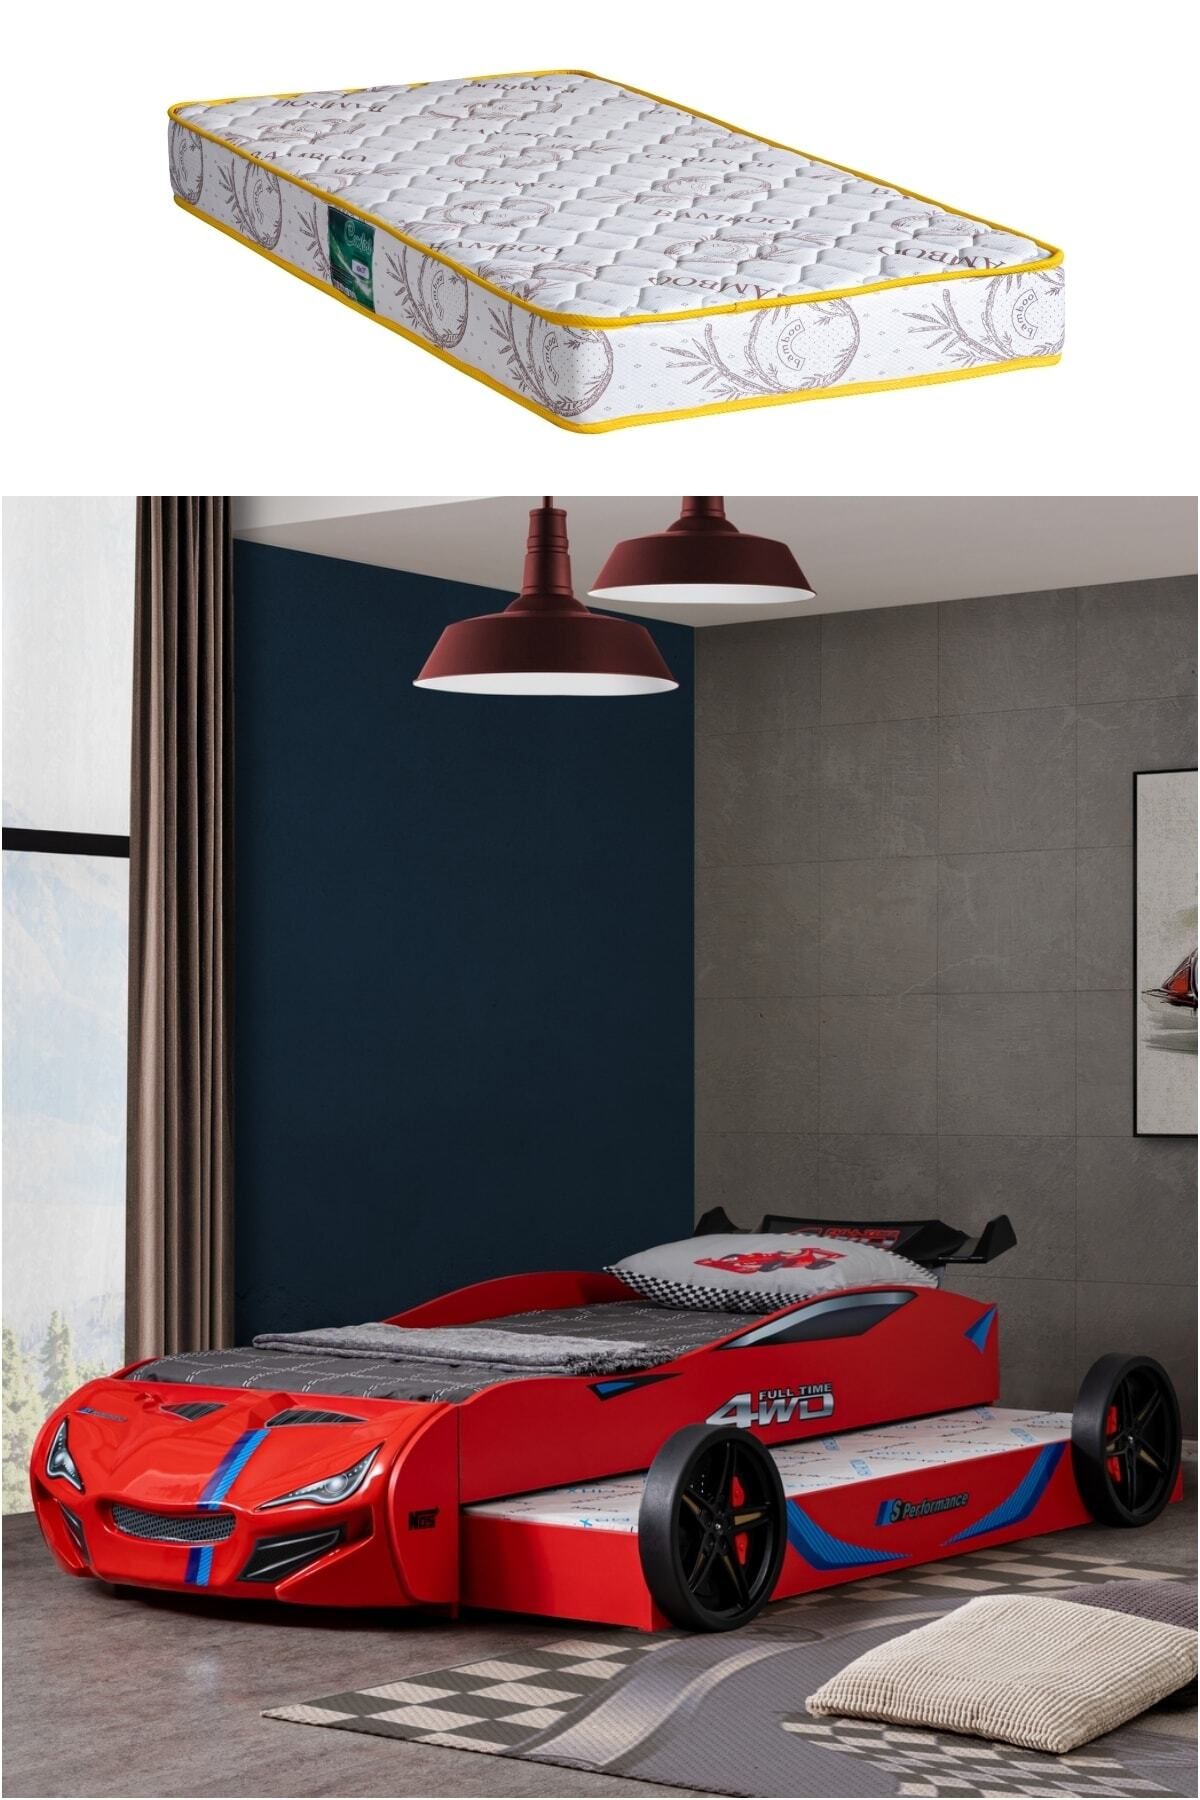 Setay Kırmızı Merso Yavrulu Rüzgarlıklı Araba Yatak + Comfort Yatak